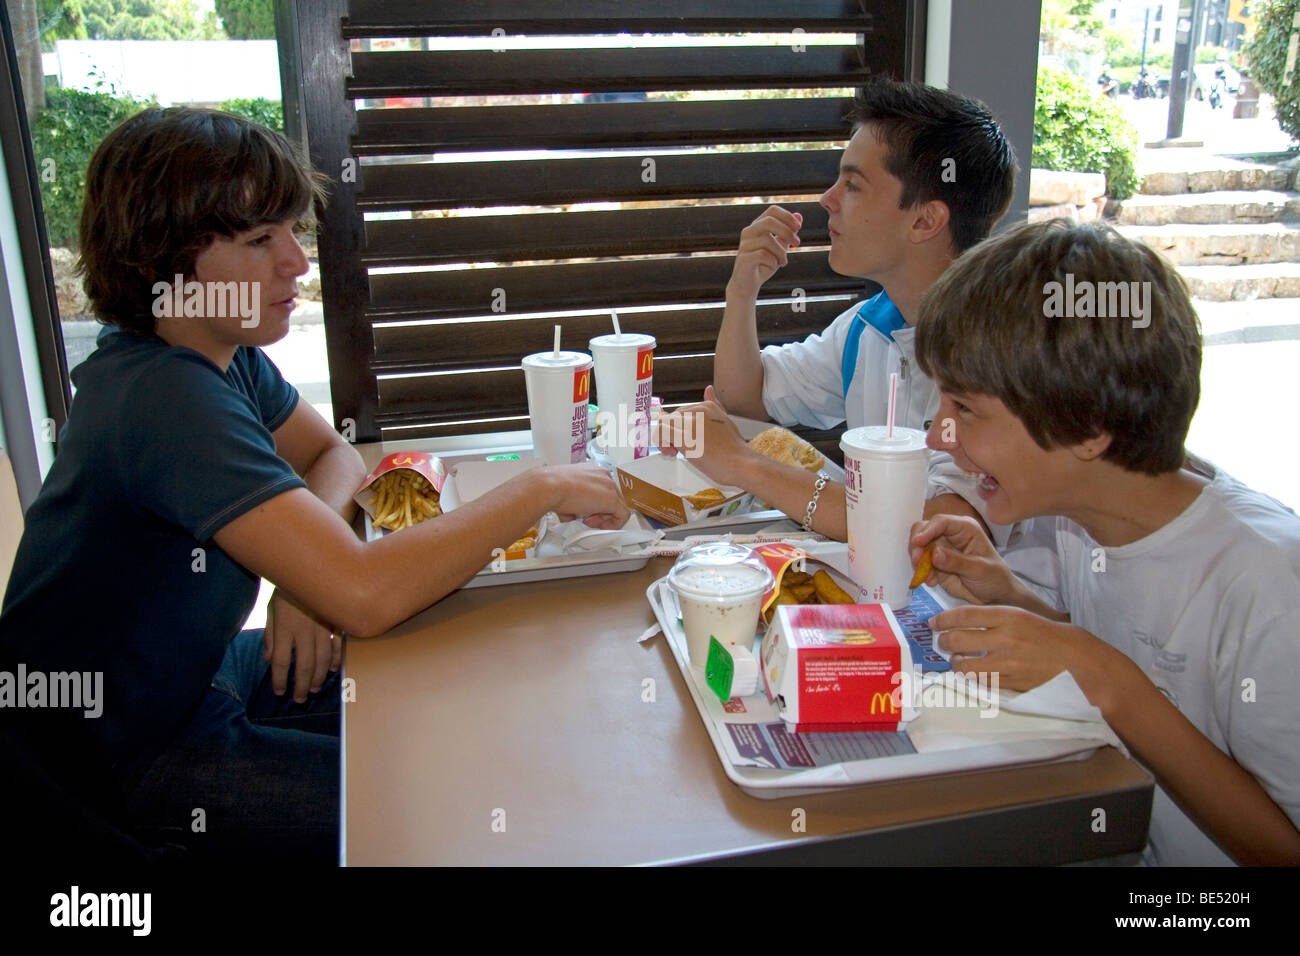 Les adolescents Français mangent au MCDONALD'S restaurant fast food dans le sud de la France. Banque D'Images